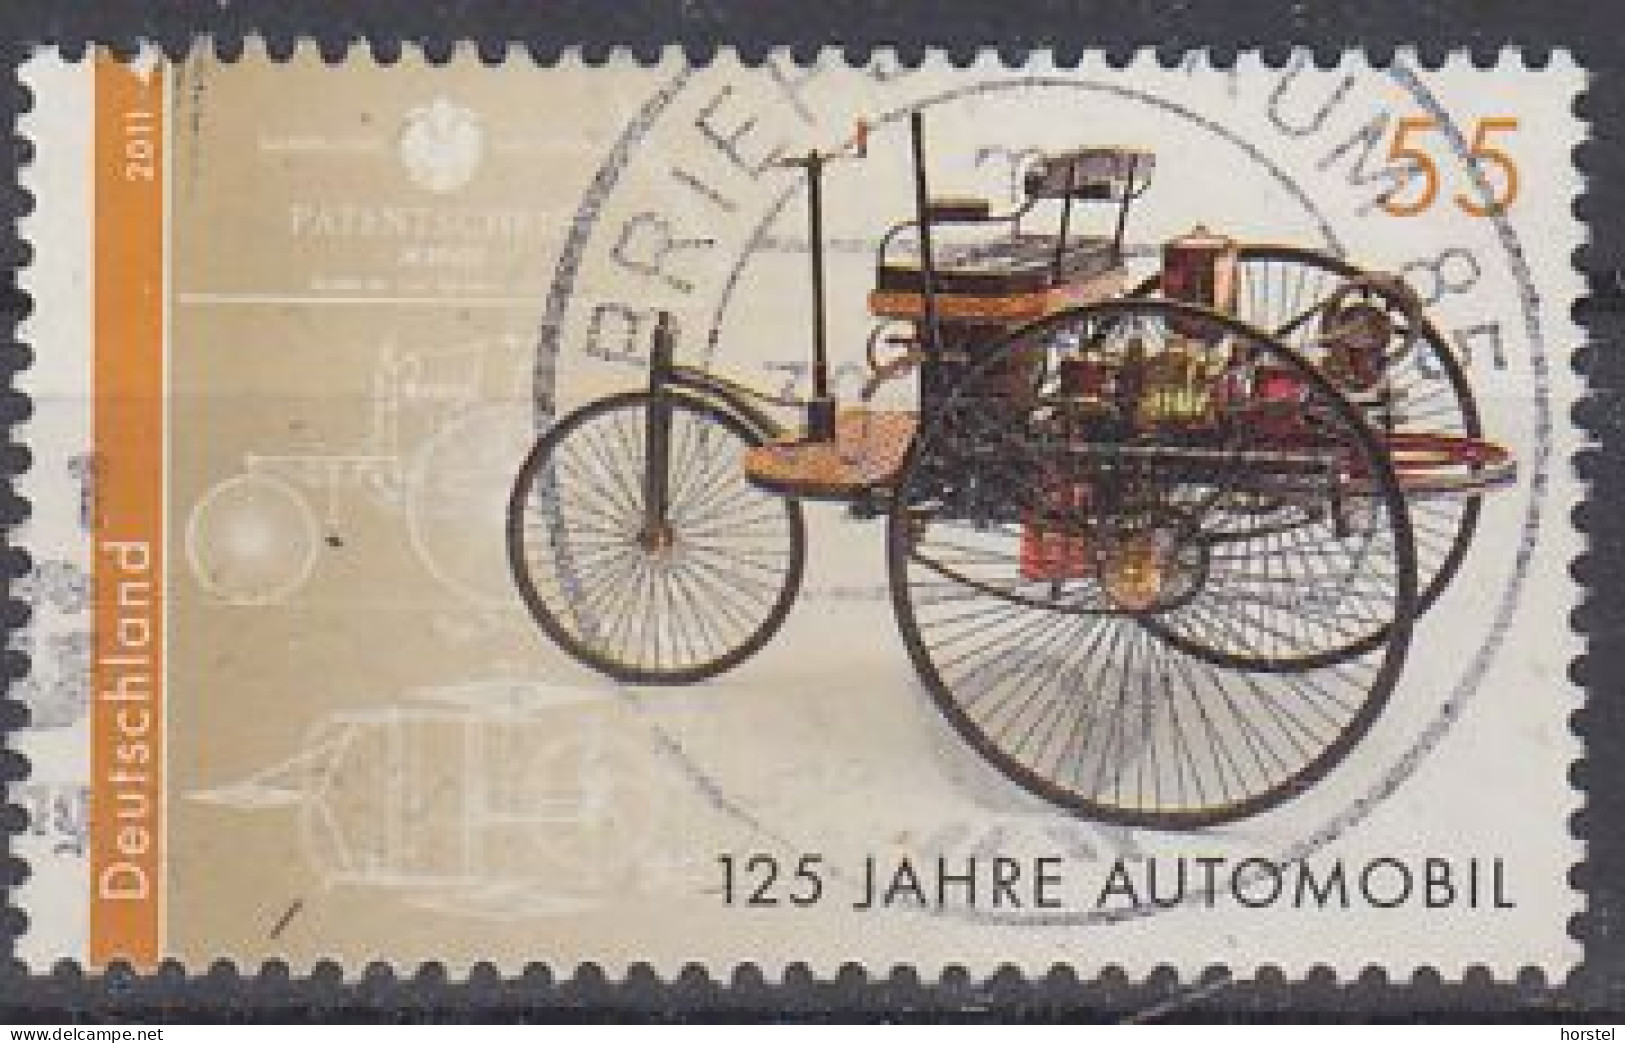 Deutschland Mi 2867  125 Jahre Automobil - Benz Patent-Motorwagen - Usados